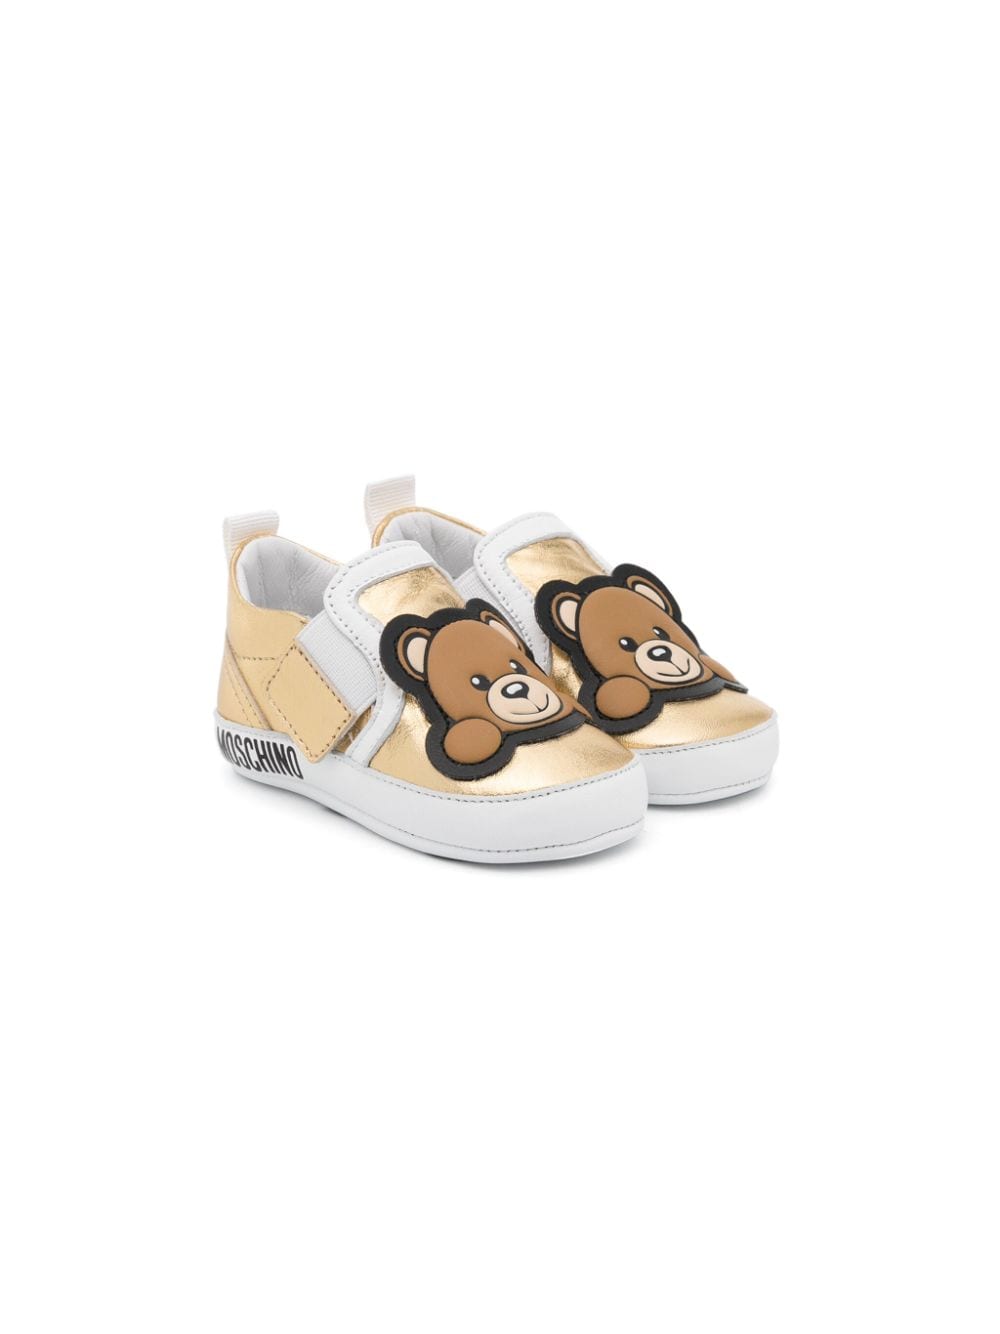 Moschino Kids Teddy Bear appliqué sneakers - Gold von Moschino Kids